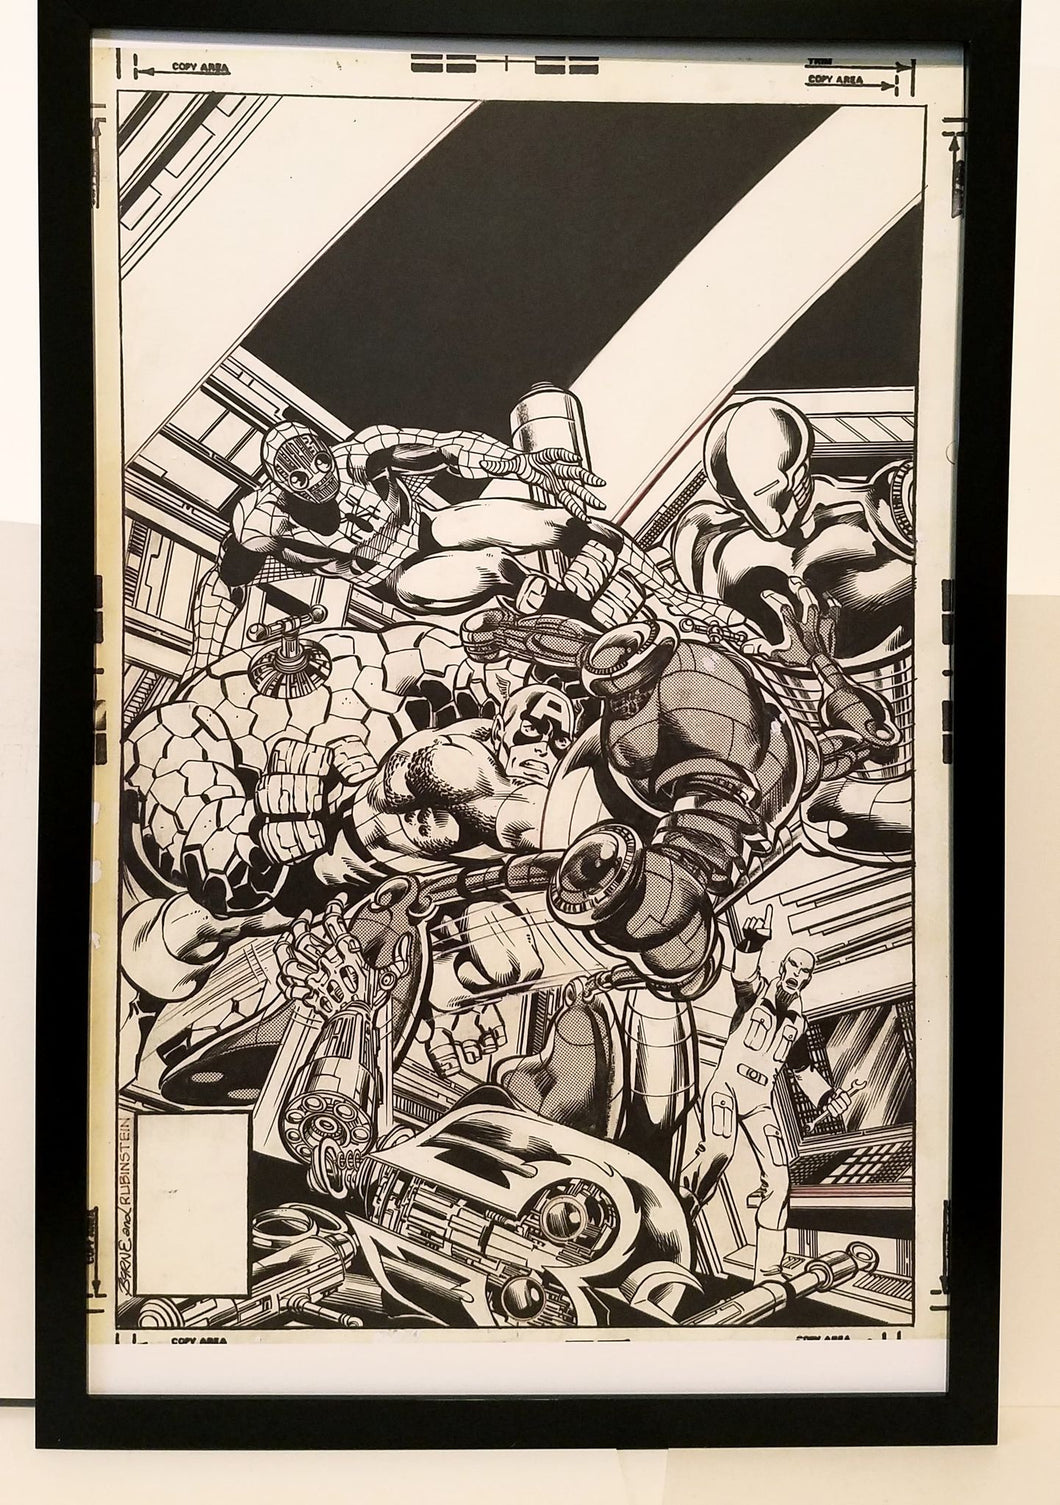 Captain America #249 by John Byrne 11x17 FRAMED Original Art Poster Marvel Comics